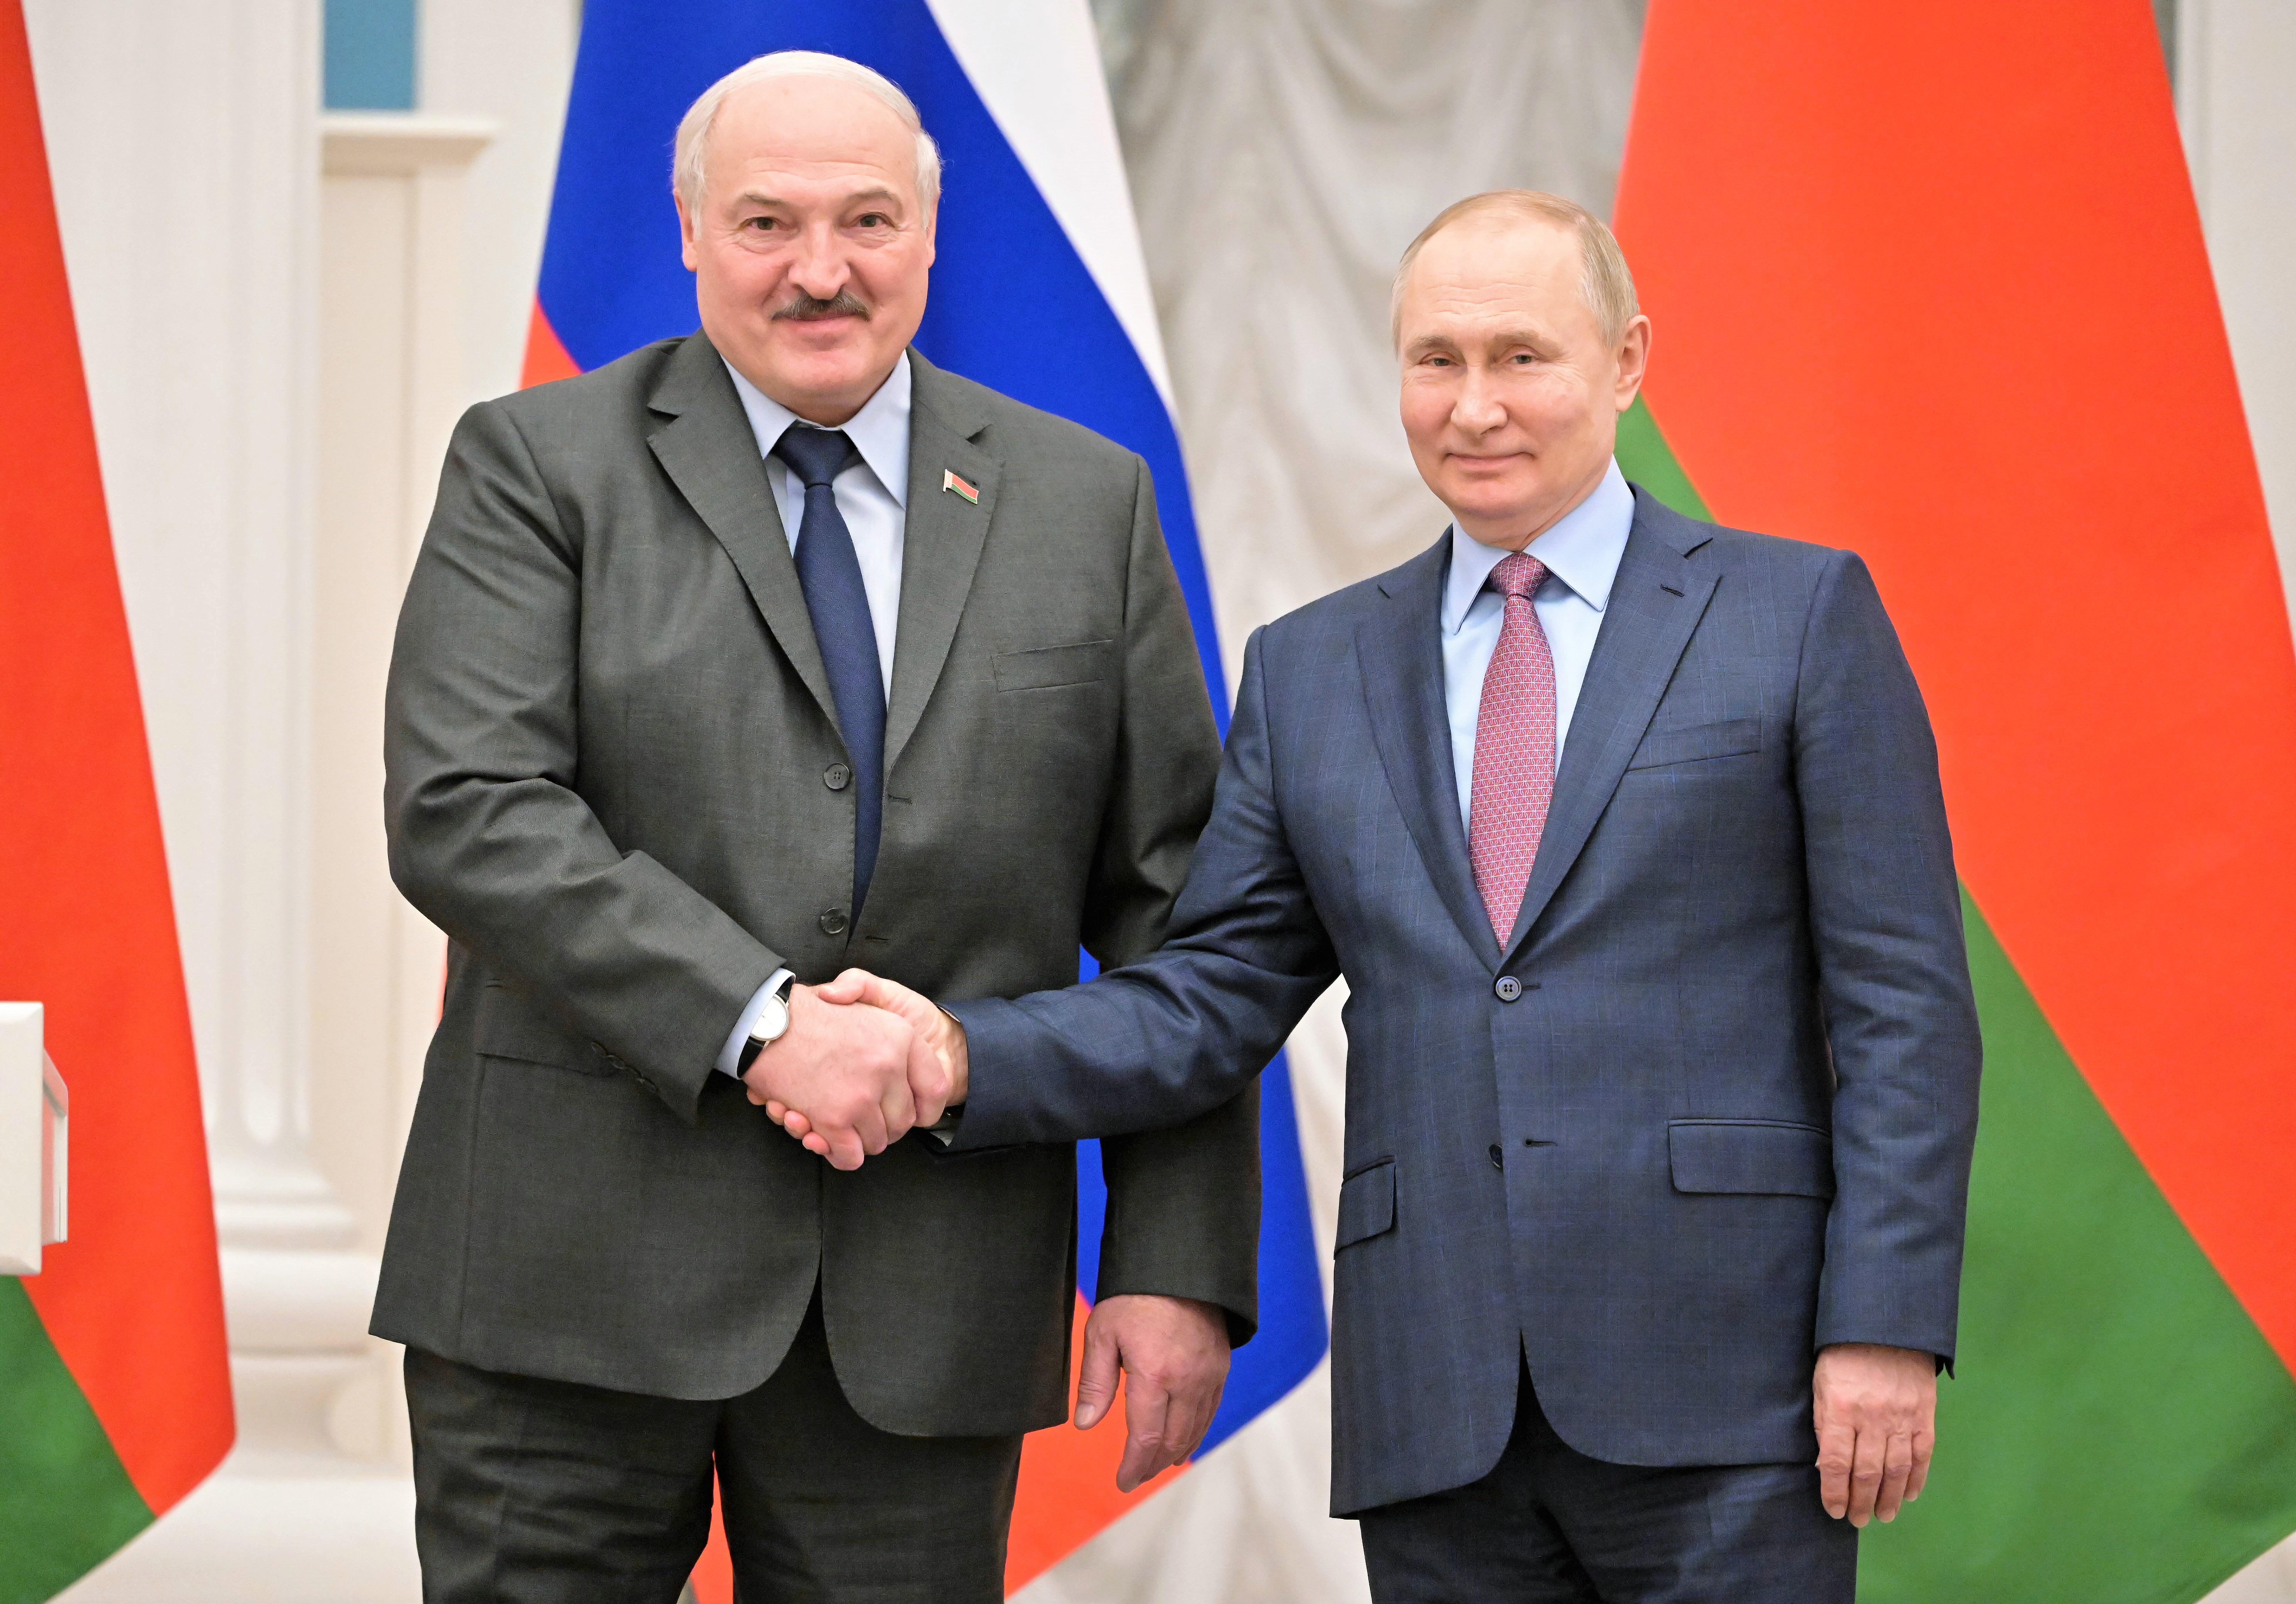 Will Putin Belarus-Diktator Lukaschenko töten? Geheimdienste warnen vor Anschlag!